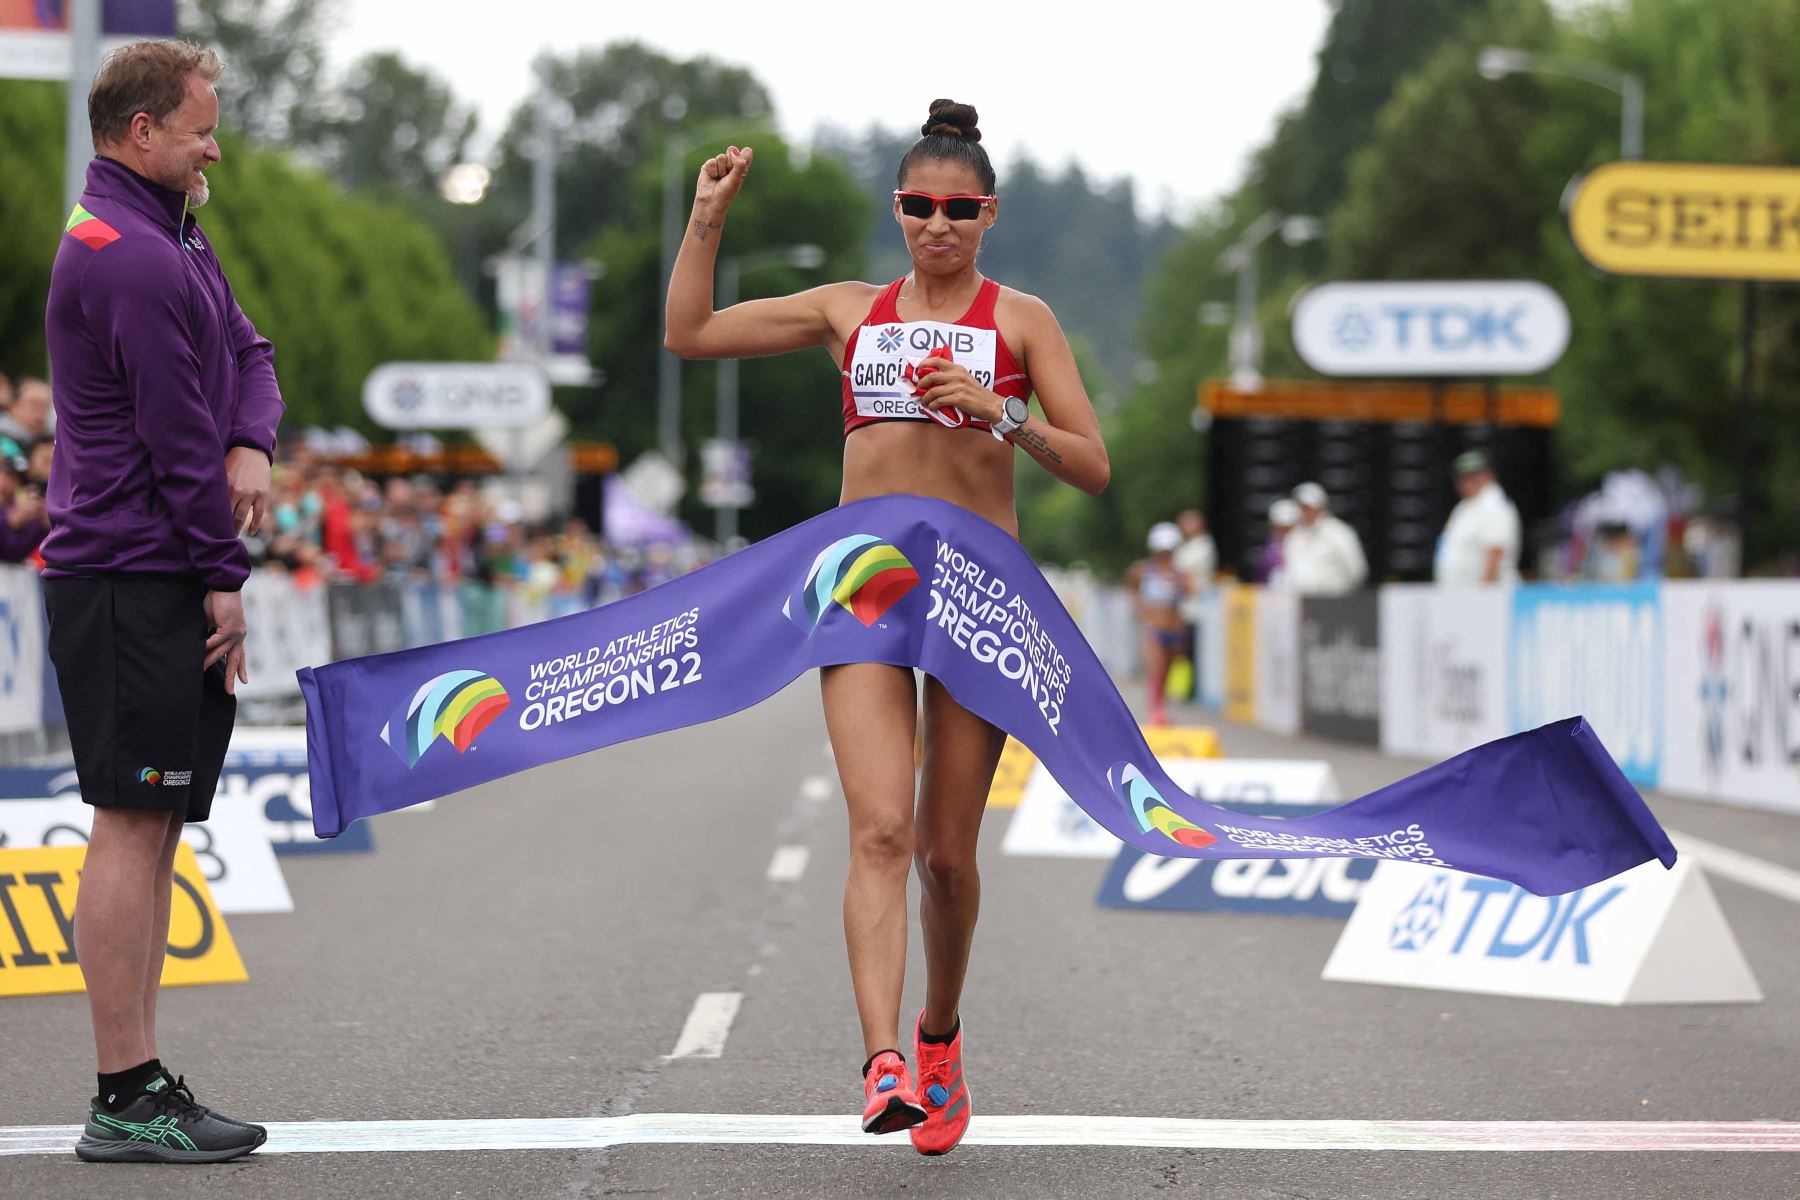 Kimberly García León cruza la línea de meta para ganar la final de carrera de 35 km de mujeres durante el Campeonato Mundial de Atletismo en Eugene, Oregón. Foto: AFP